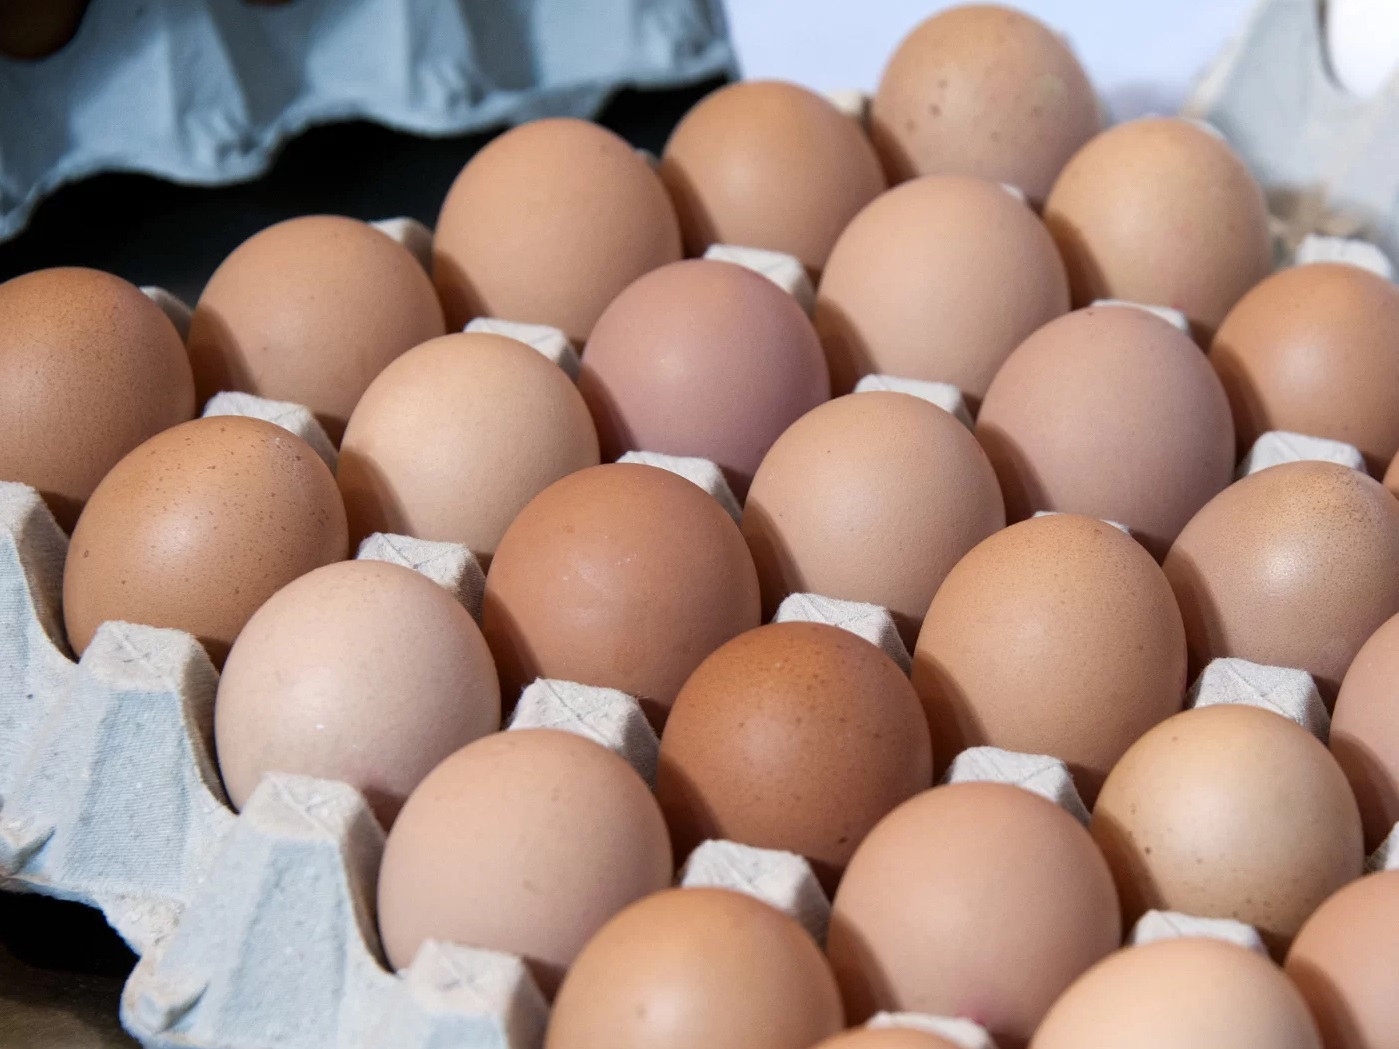 قیمت جدید تخم مرغ در میادین اعلام شد